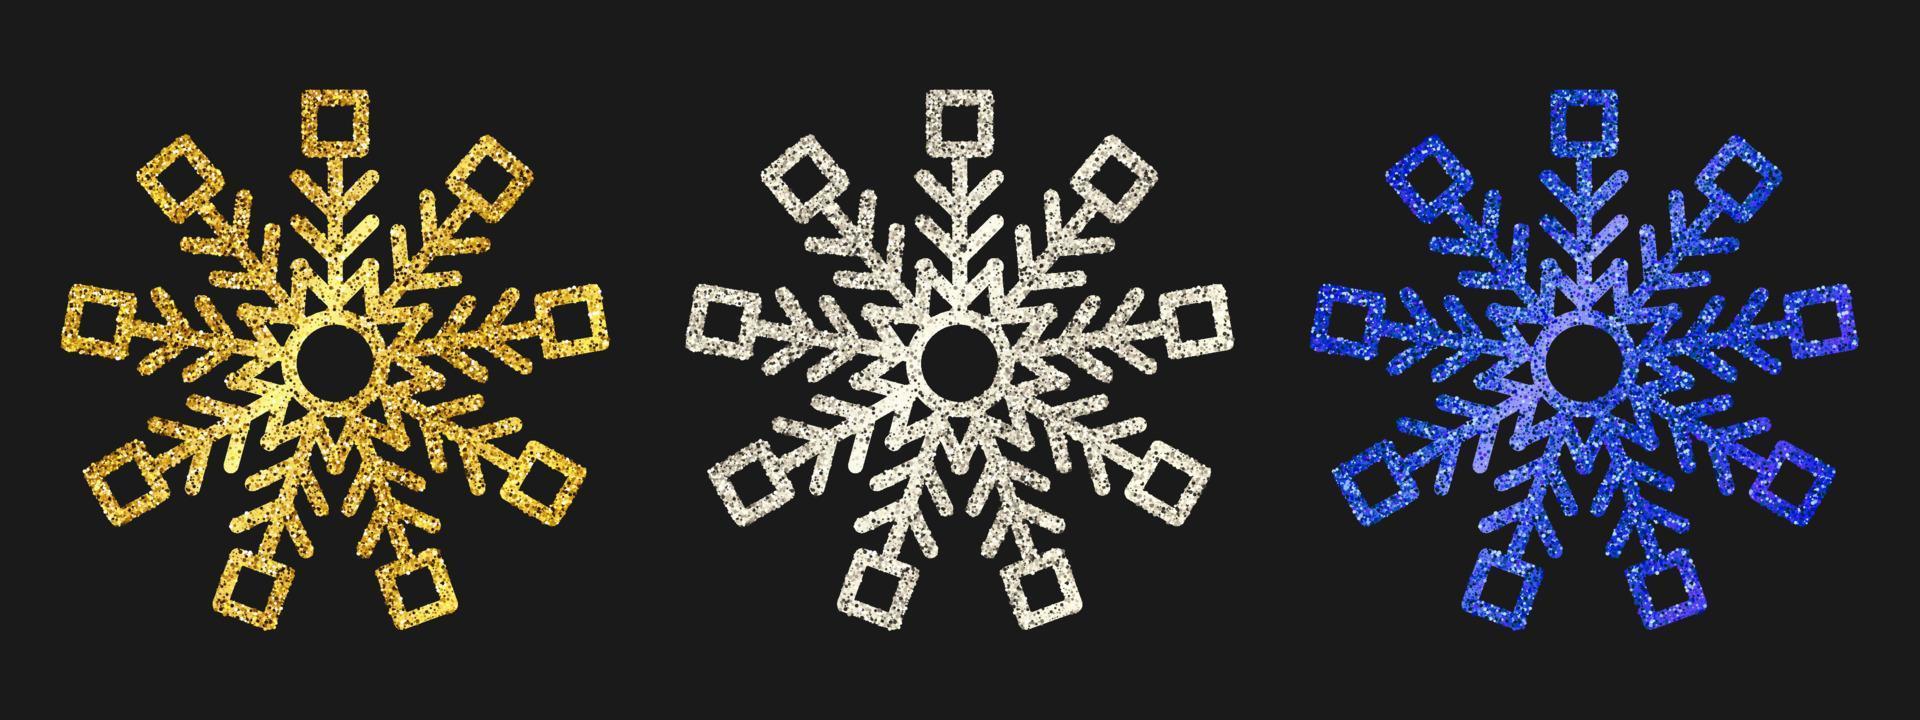 flocos de neve de glitter em fundo escuro. conjunto de três flocos de neve de glitter dourado, prateado e azul. elementos de decoração de natal e ano novo. ilustração vetorial. vetor